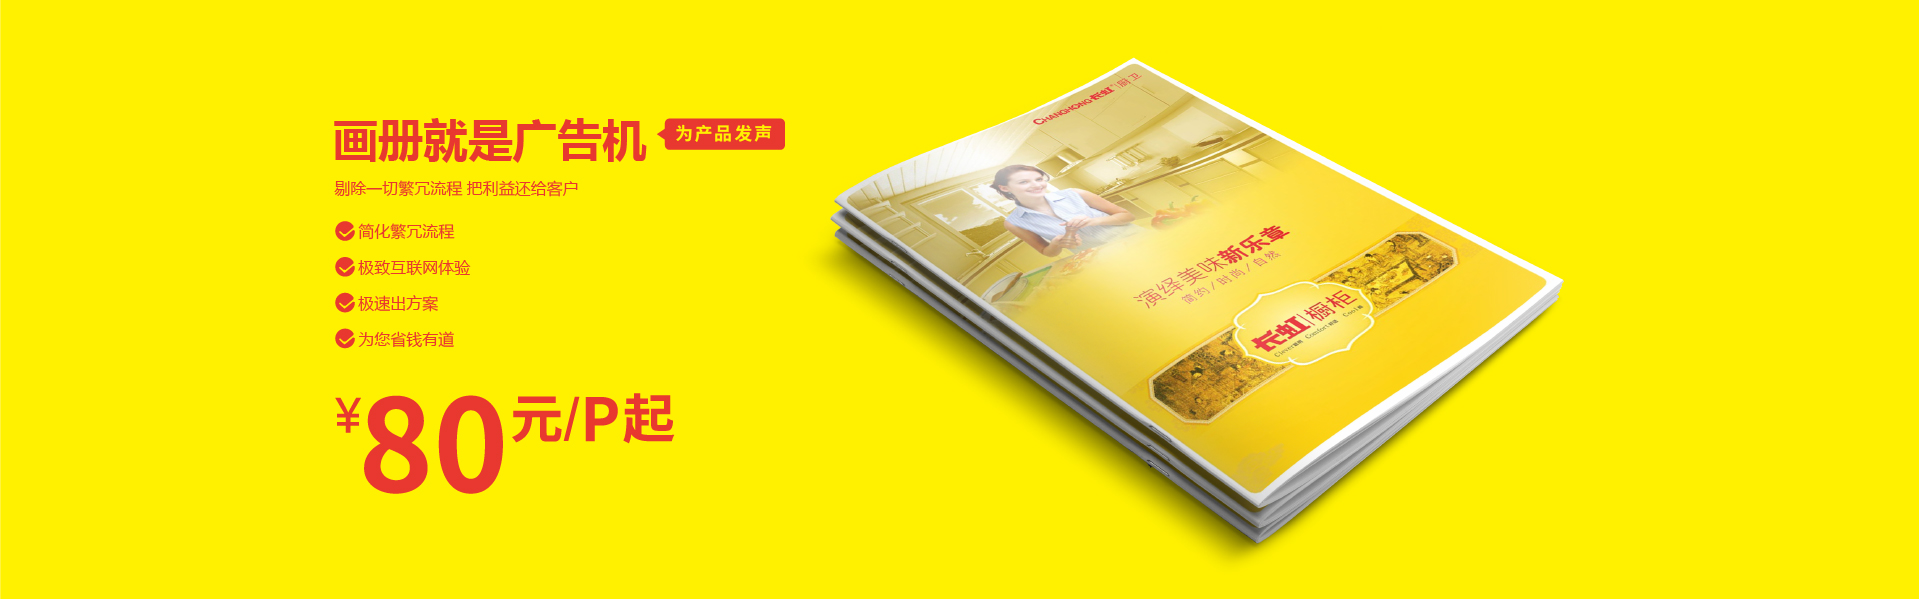 深圳宣传画册设计公司现在的产品宣传册制作多少钱？